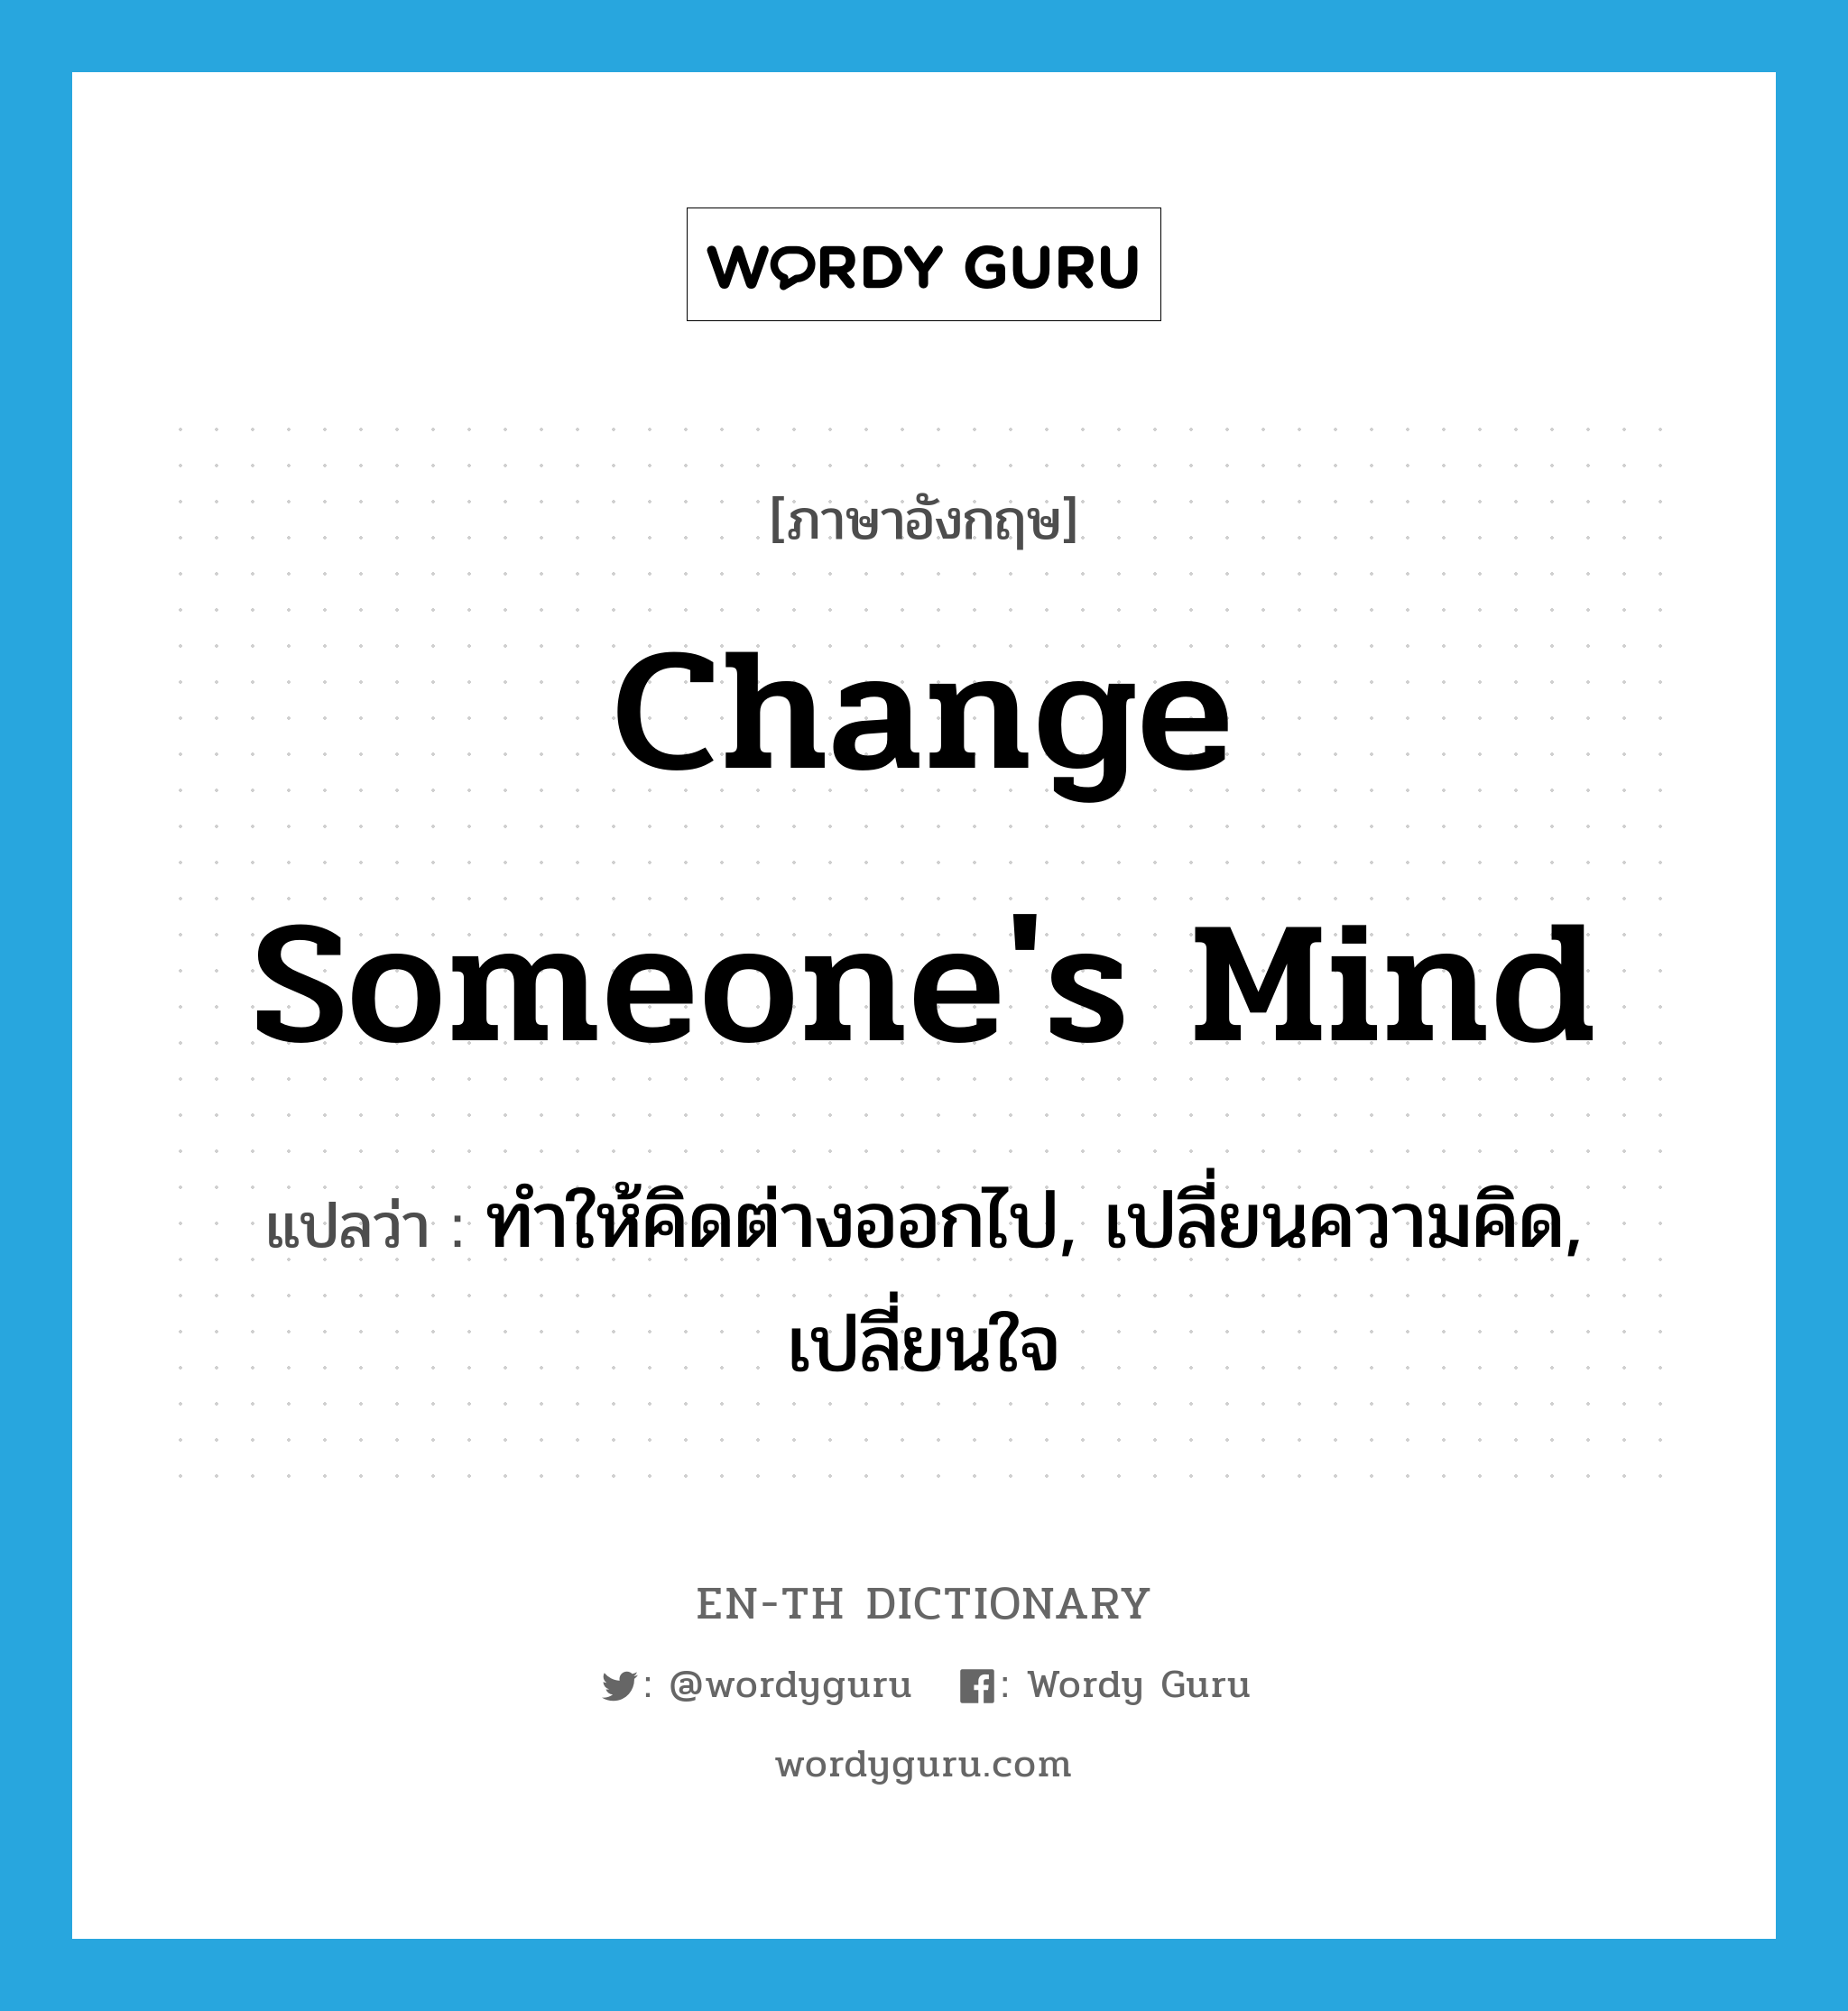 ทำให้คิดต่างออกไป, เปลี่ยนความคิด, เปลี่ยนใจ ภาษาอังกฤษ?, คำศัพท์ภาษาอังกฤษ ทำให้คิดต่างออกไป, เปลี่ยนความคิด, เปลี่ยนใจ แปลว่า change someone's mind ประเภท IDM หมวด IDM